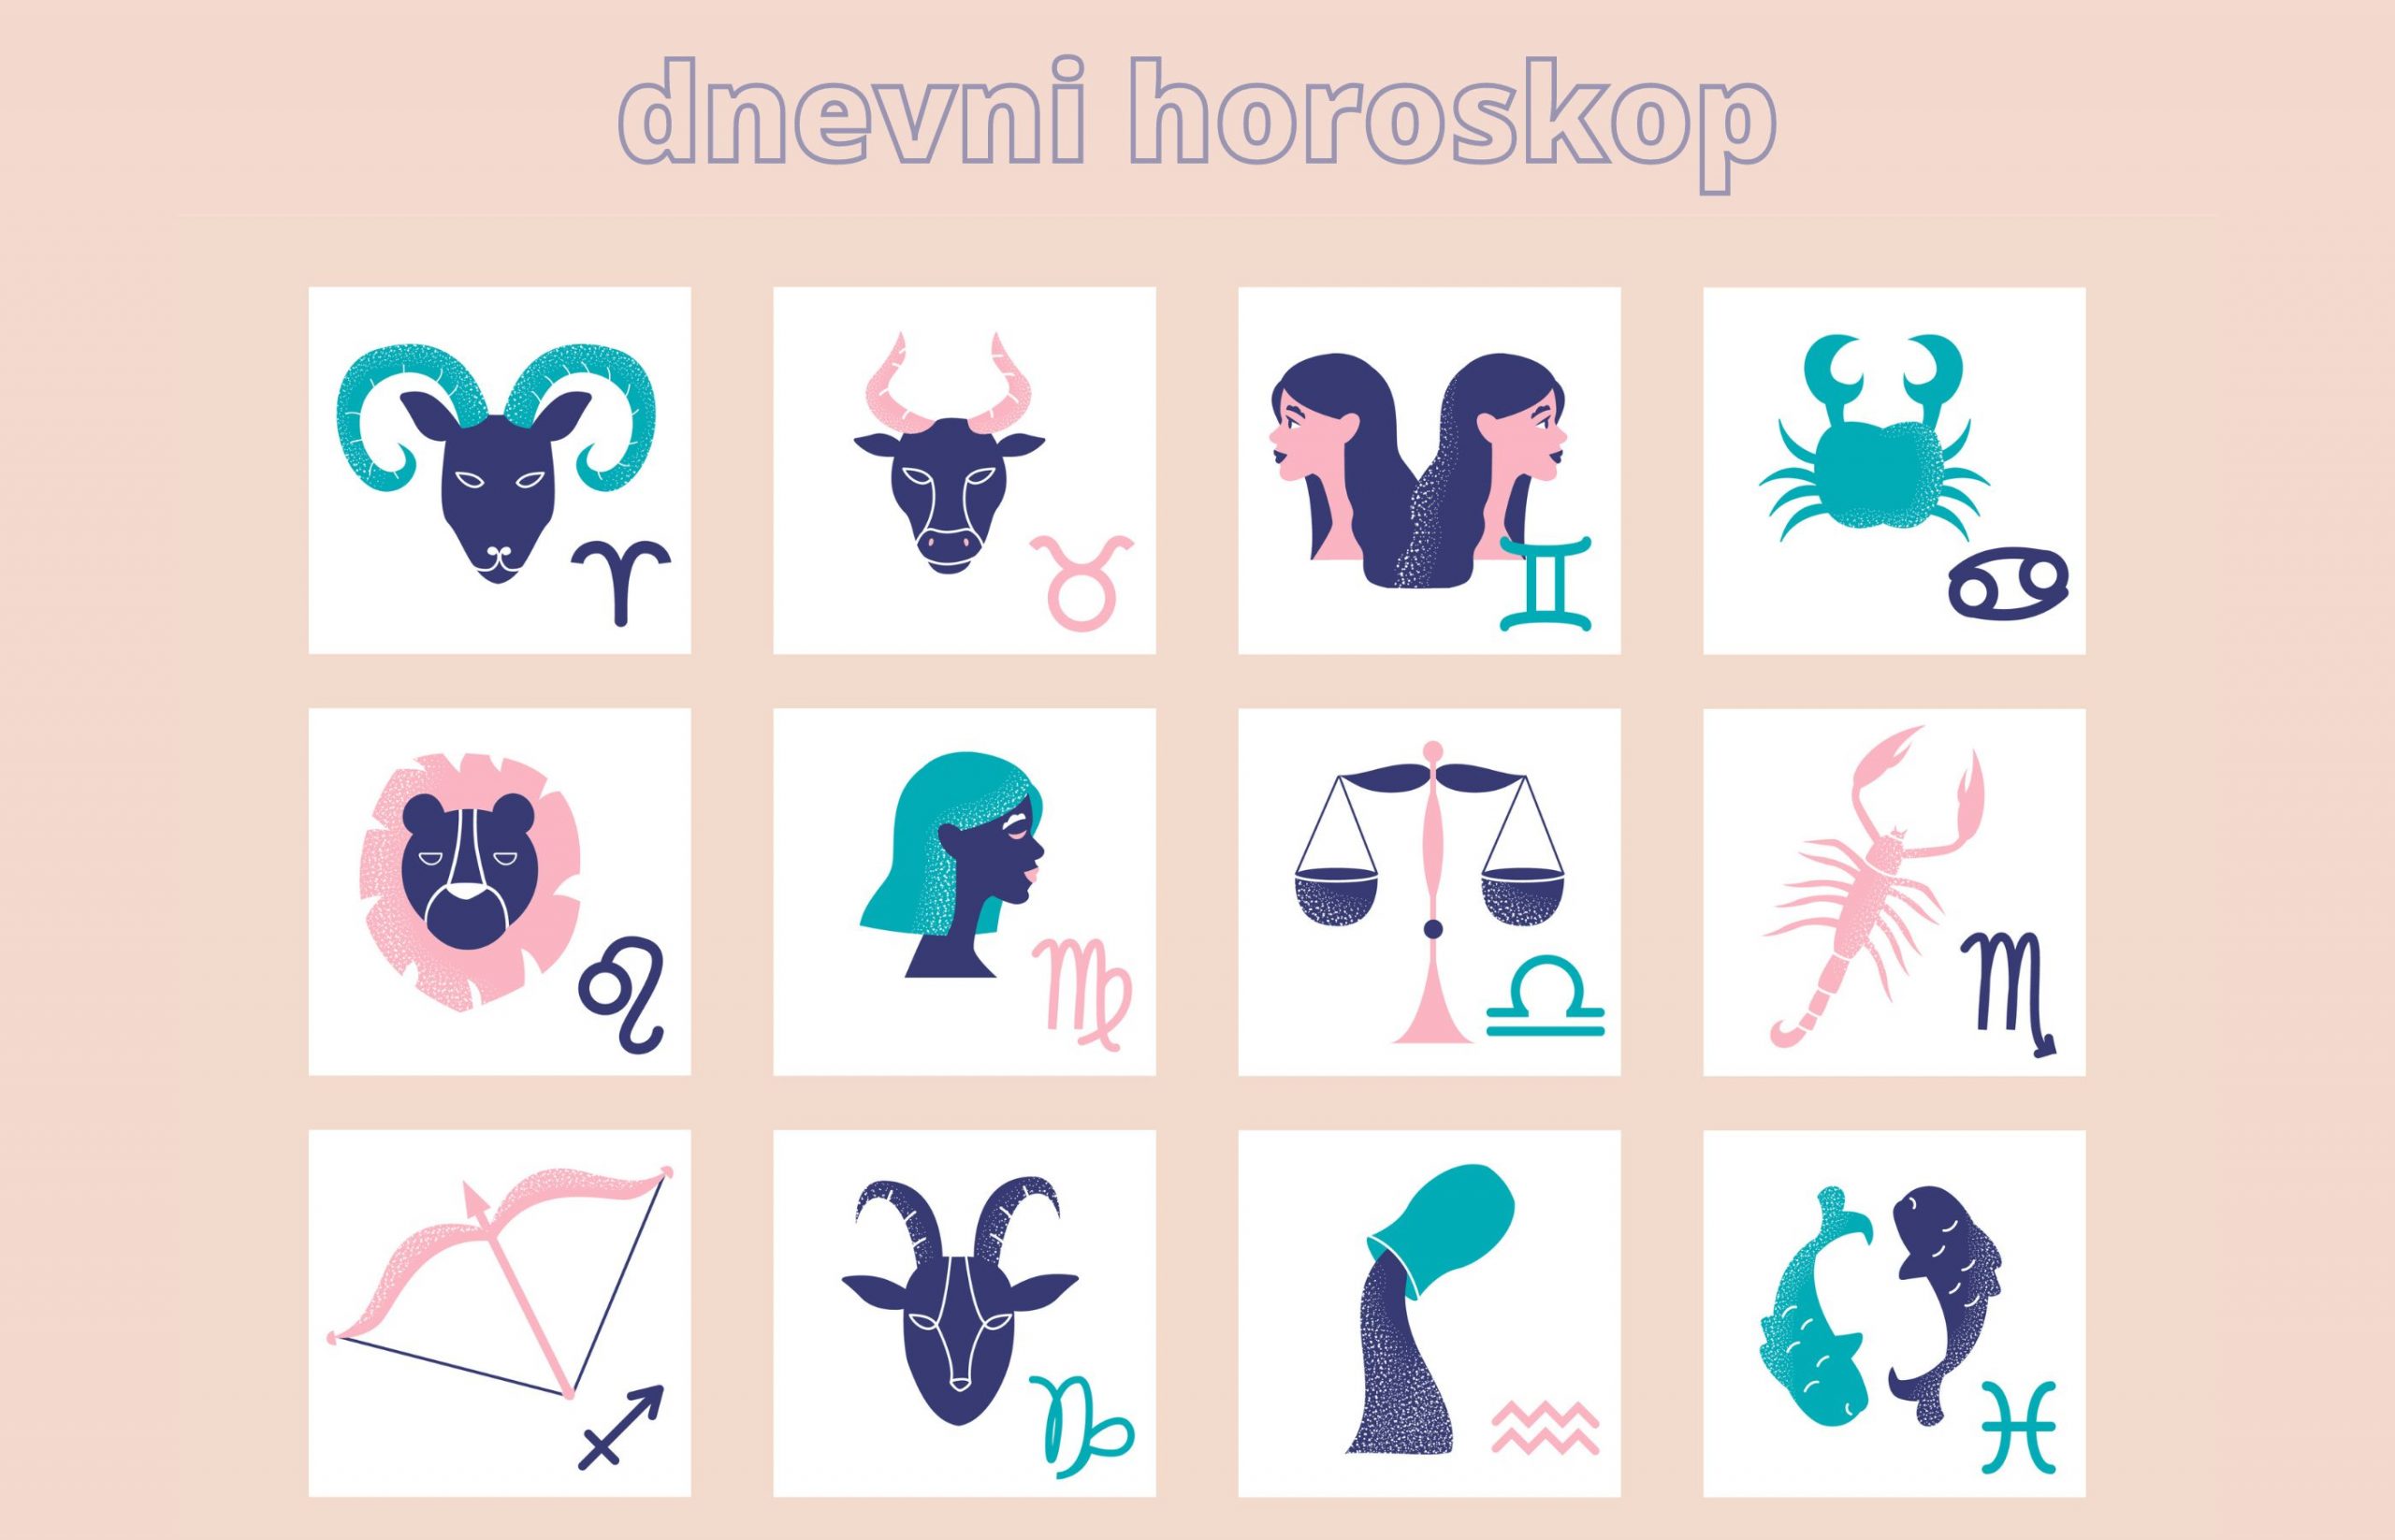 Vaga dnevni ljubavni horoskop